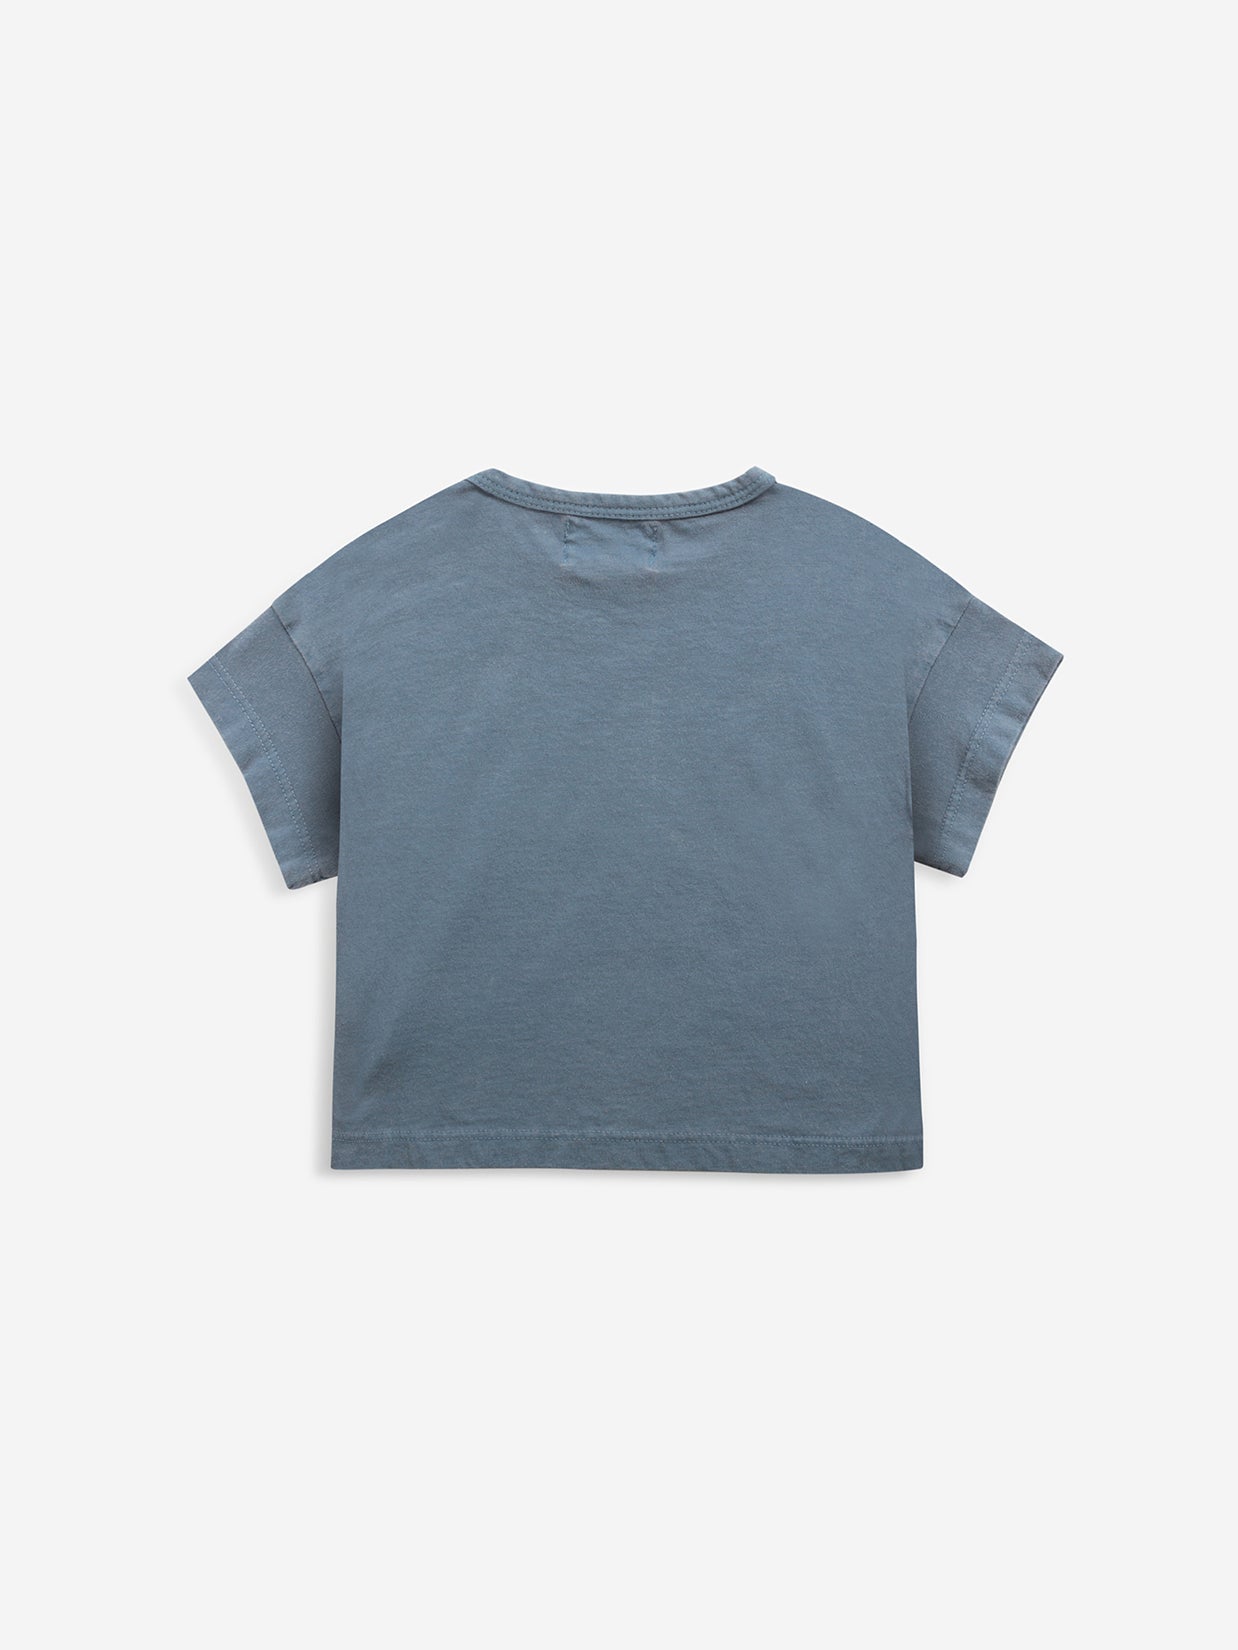 Poma blue T-shirt